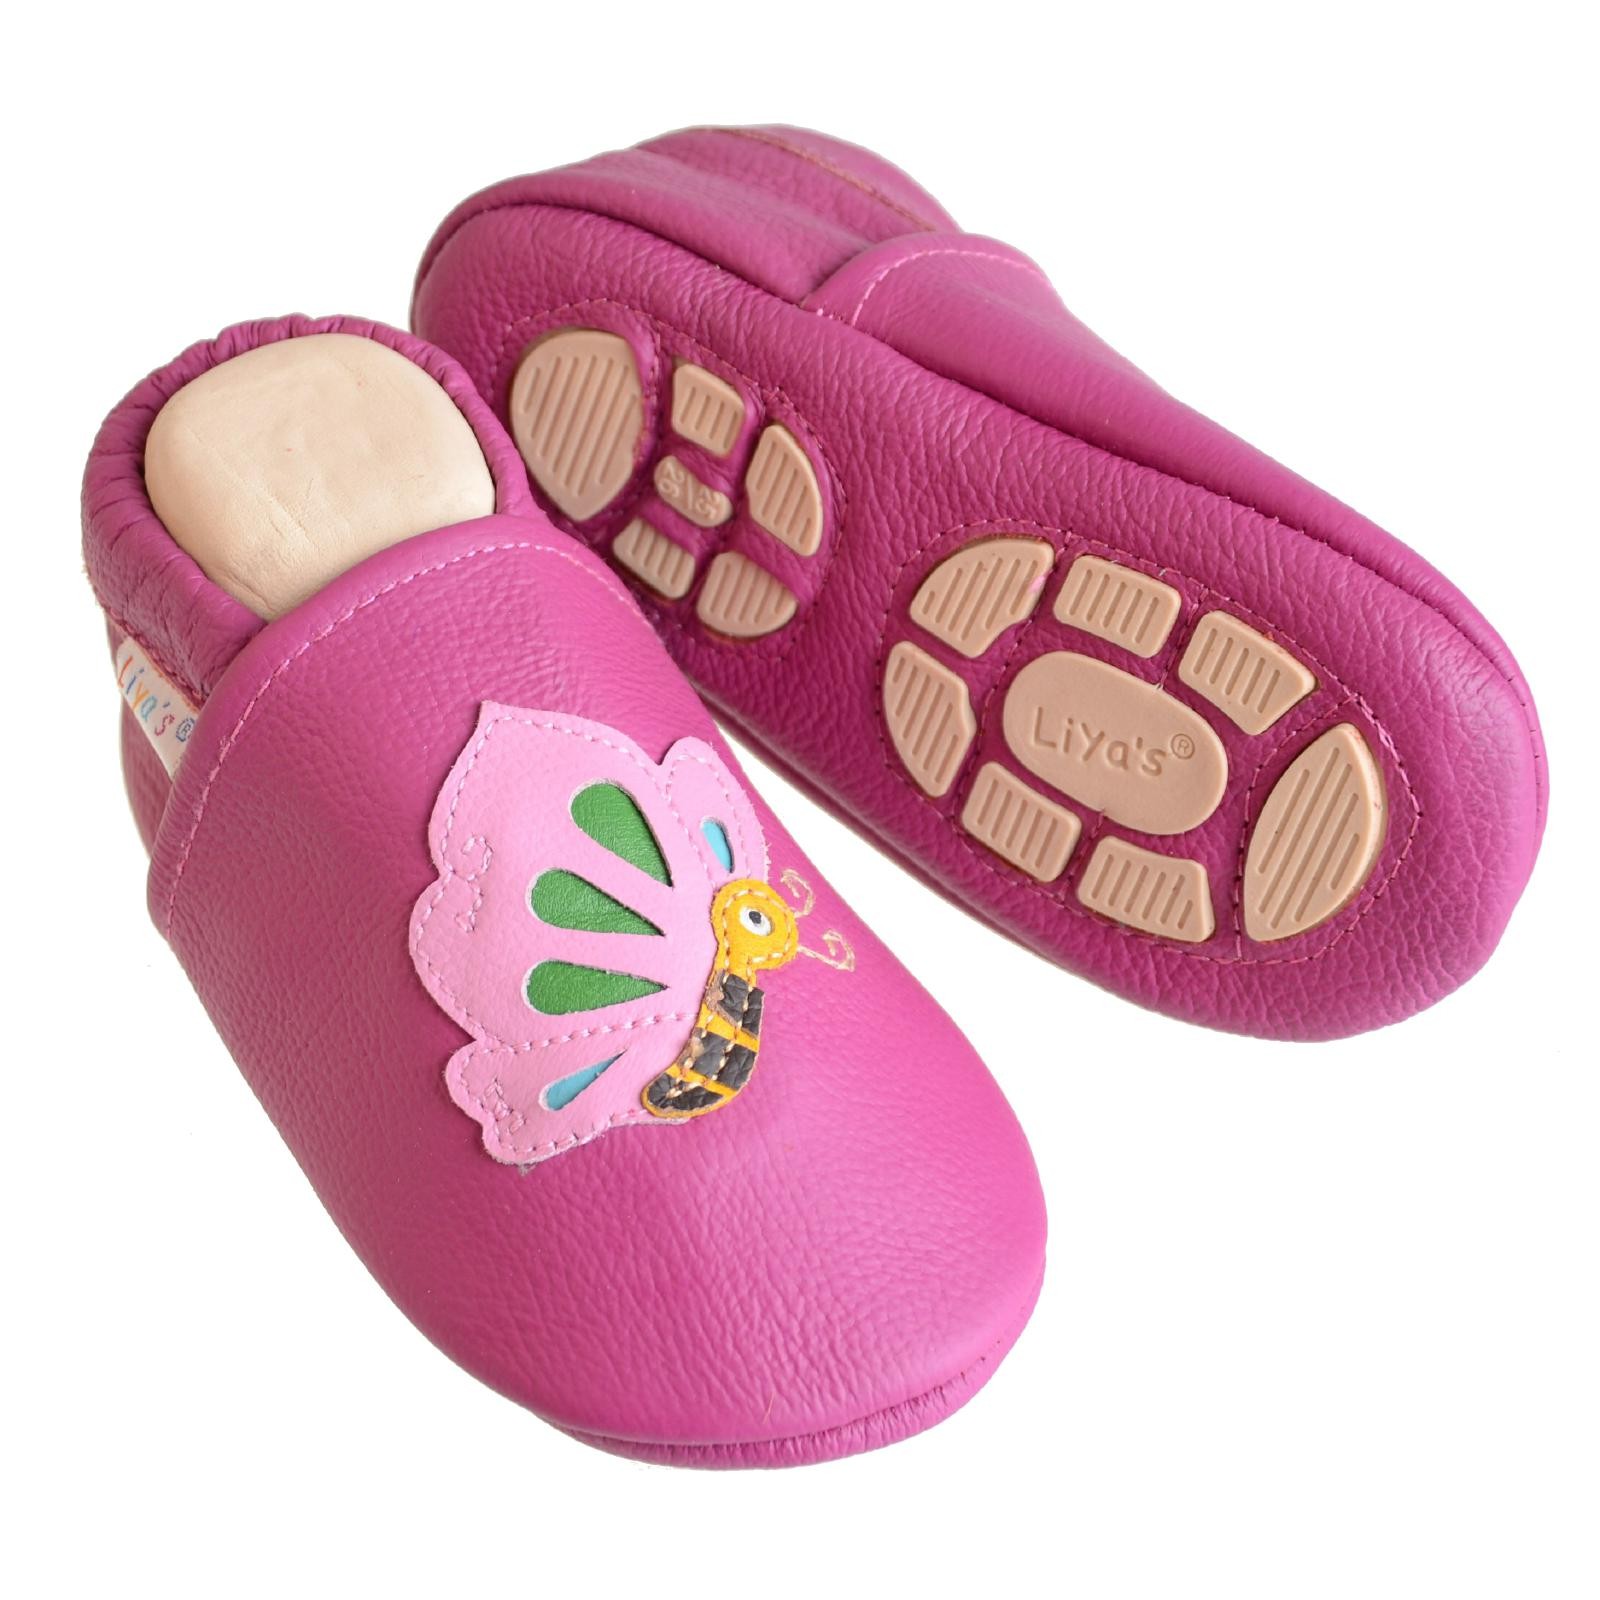 Liya's Hauschuhe mit Gummisohle - #661 Schmetterling in pink